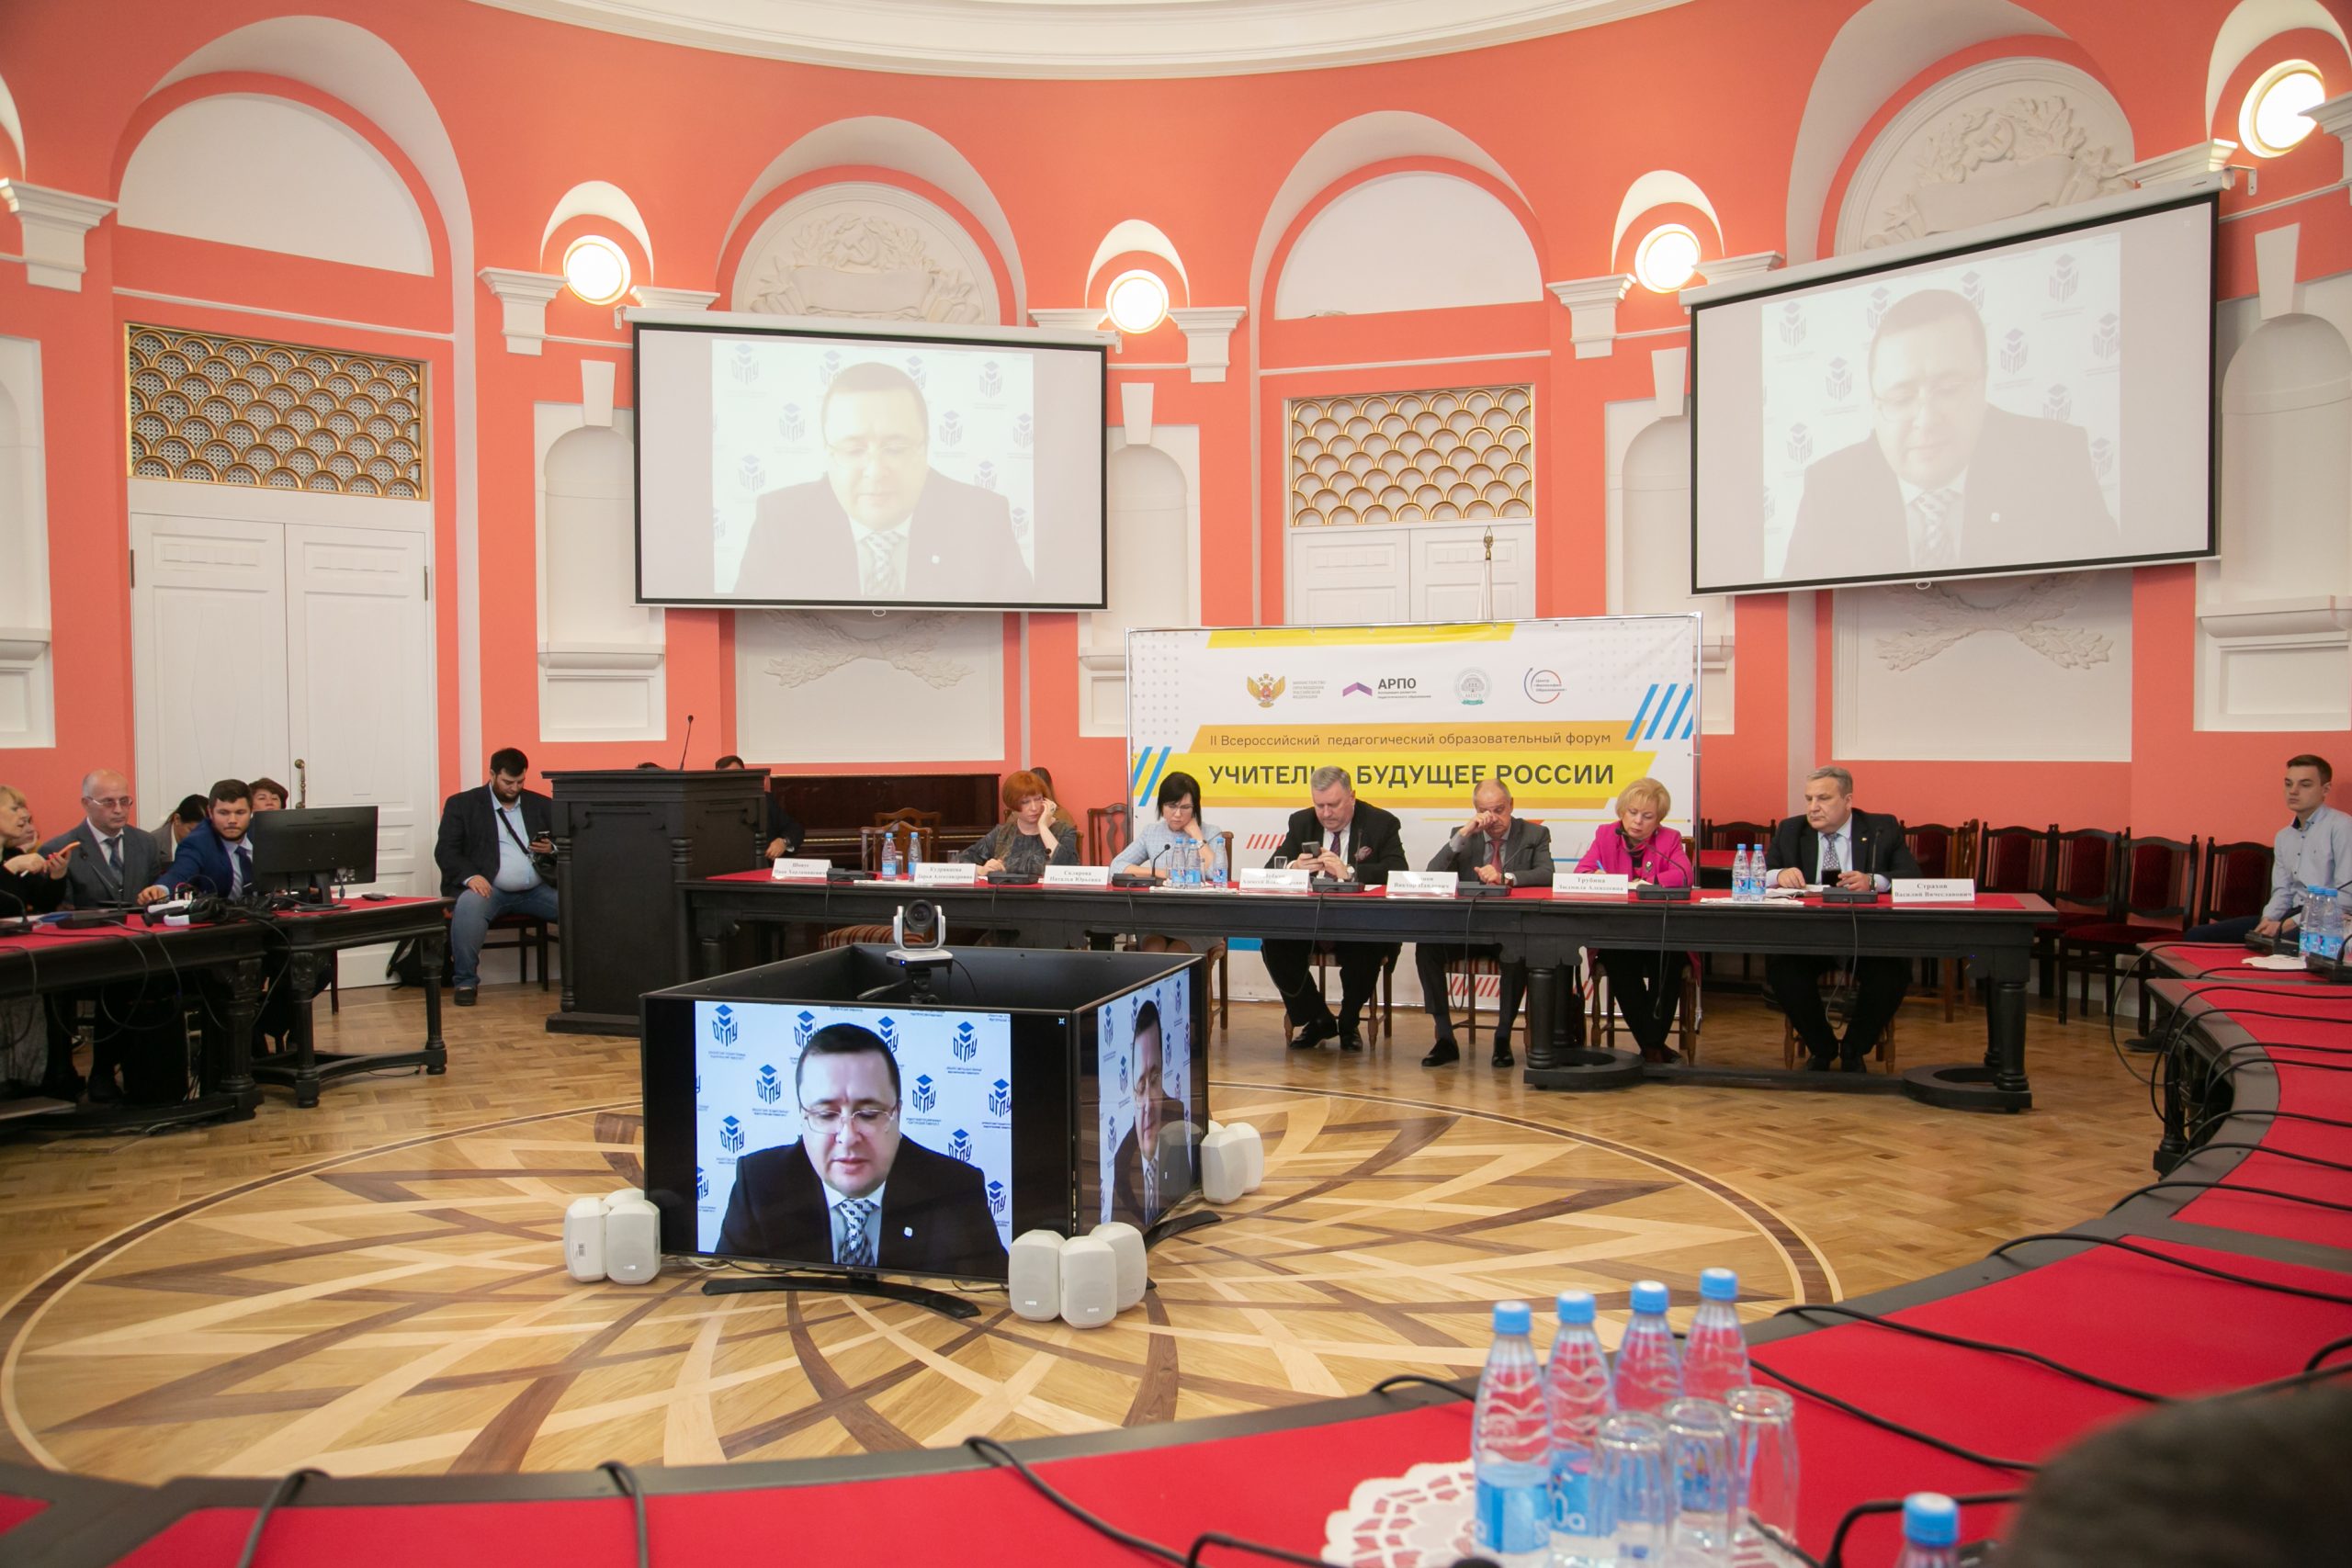 В МПГУ состоялось торжественное открытие форума «Учитель – Будущее России»